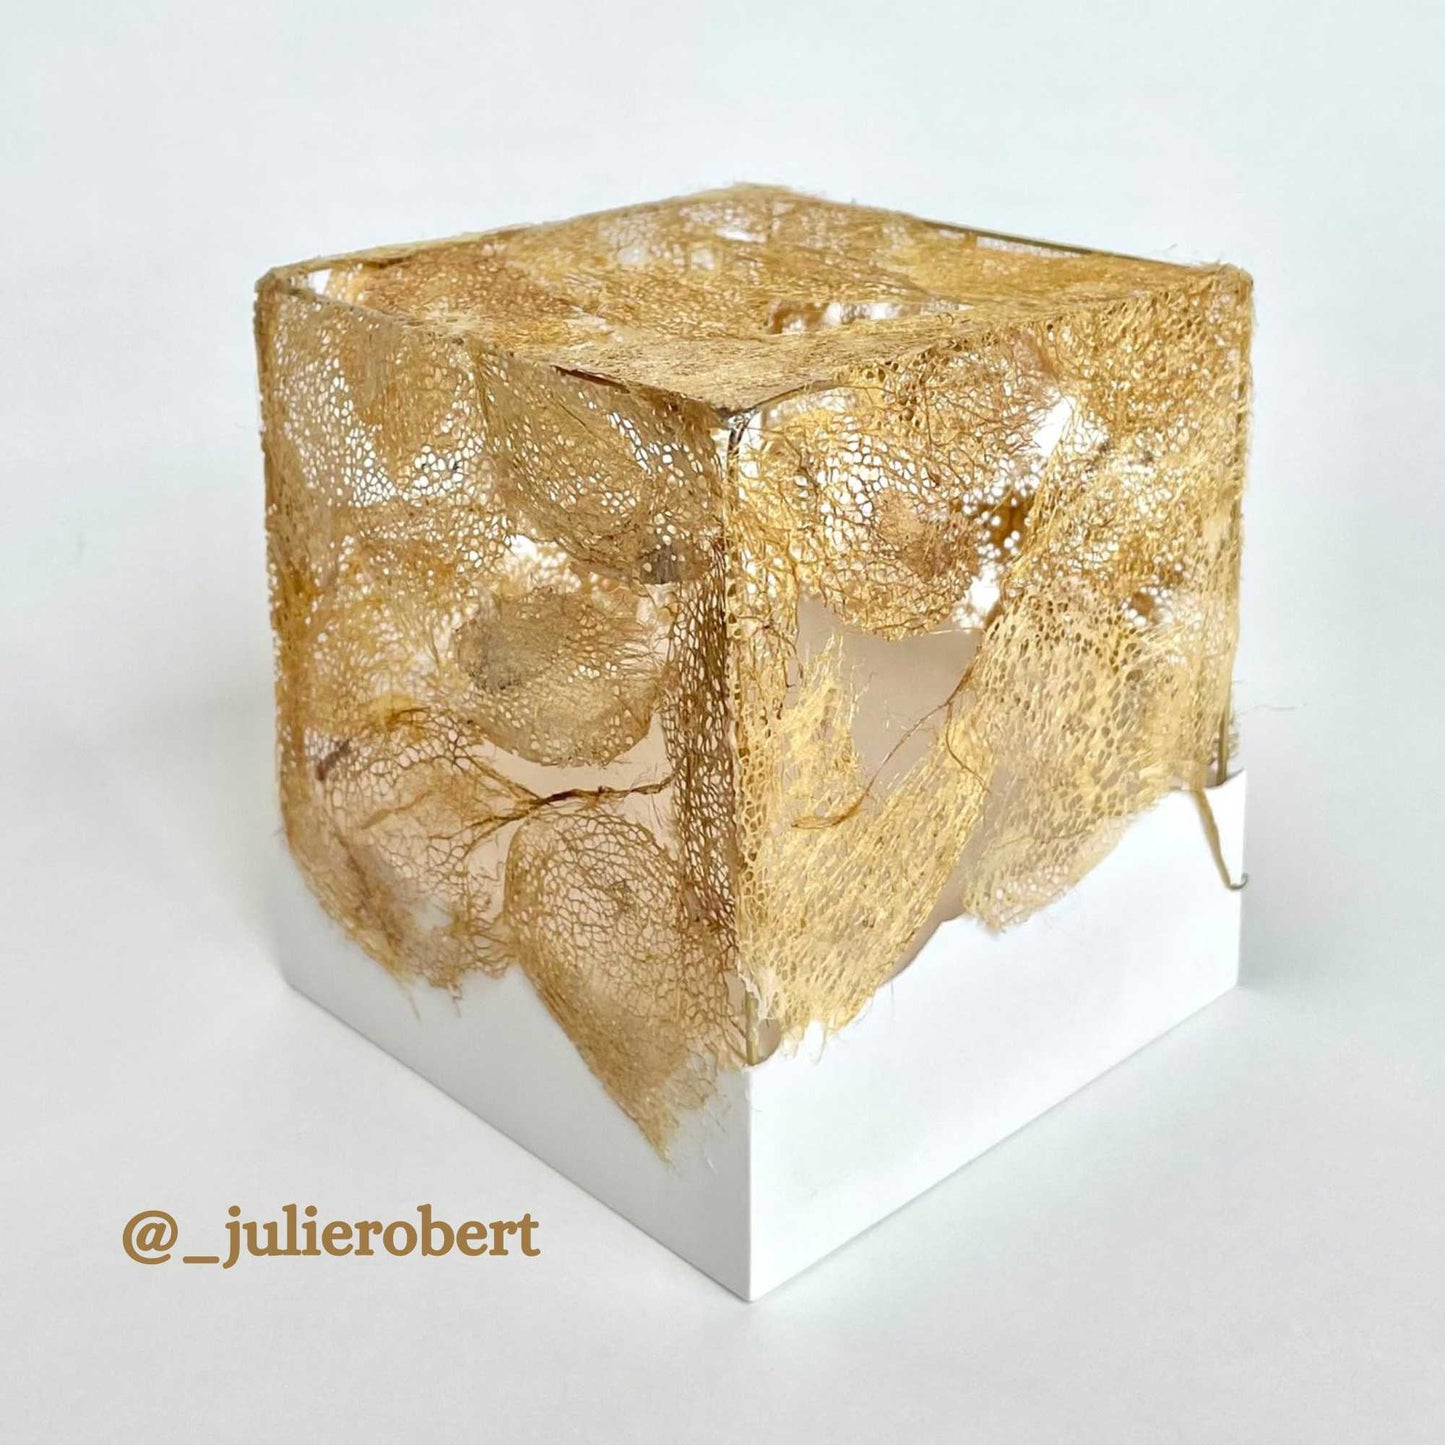 sculpture by artist julie robert using the golden cricula cocoons